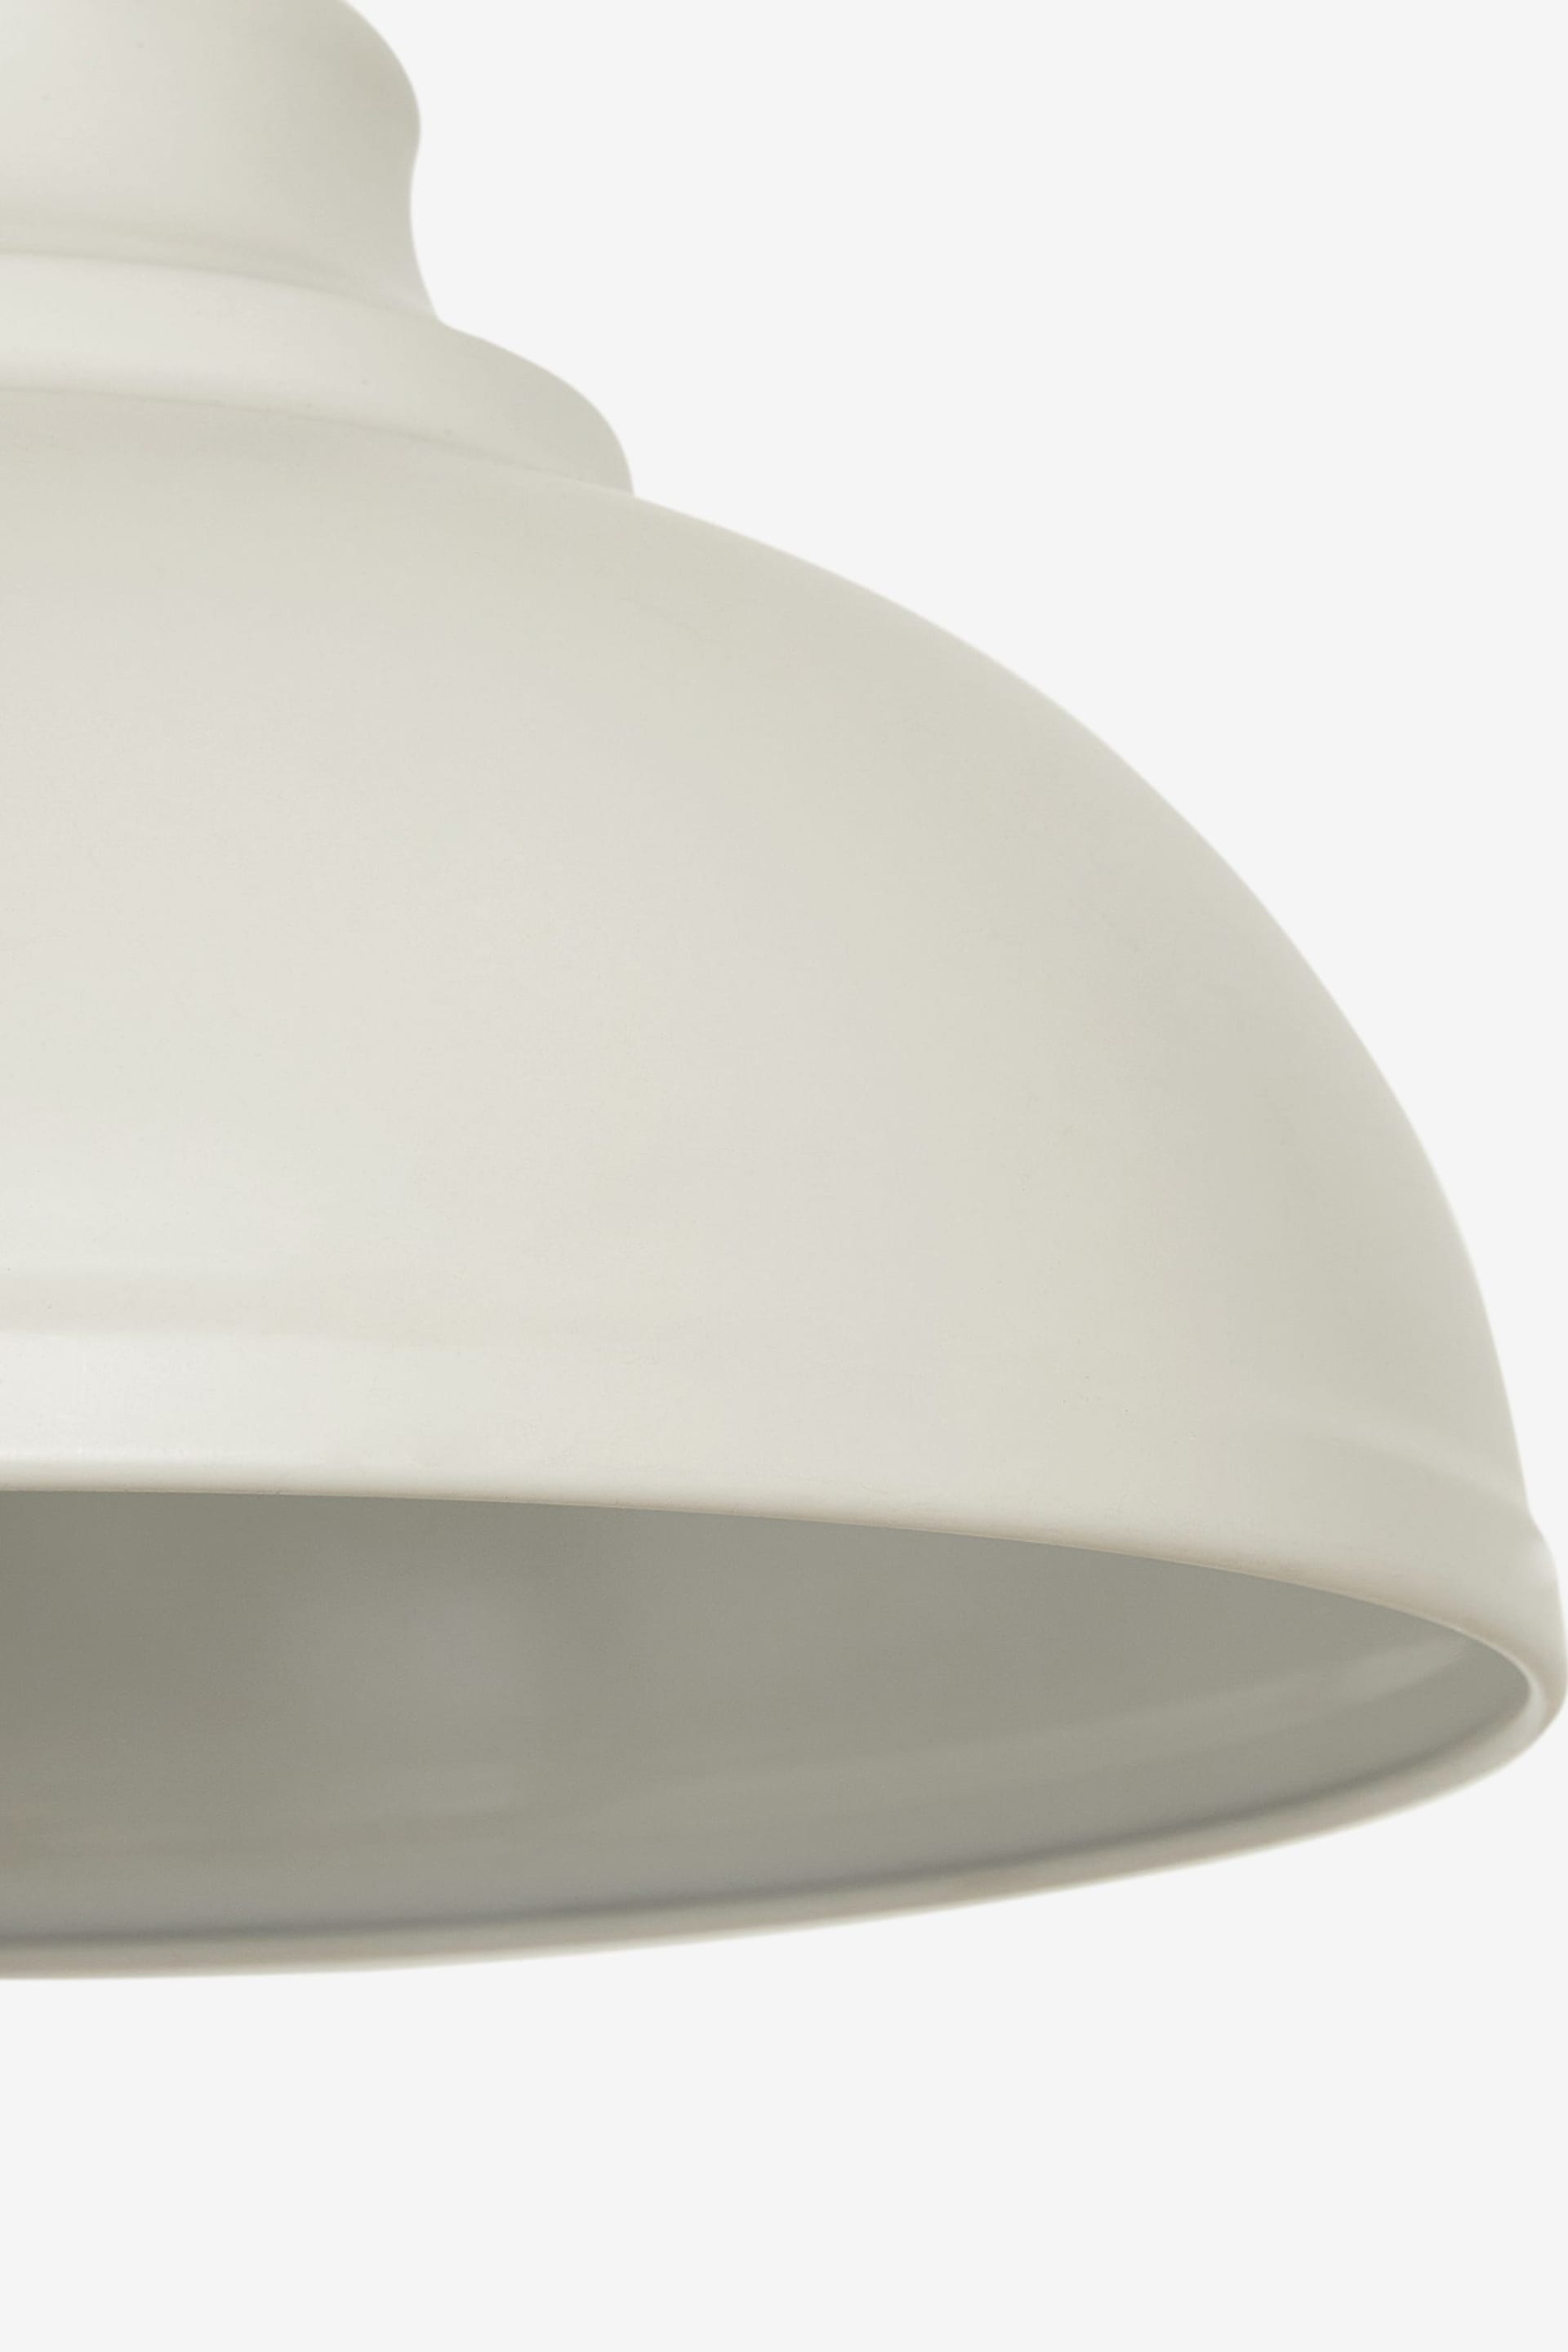 Cream Dixon Easy Fit Pendant Lamp Shade - Image 3 of 4